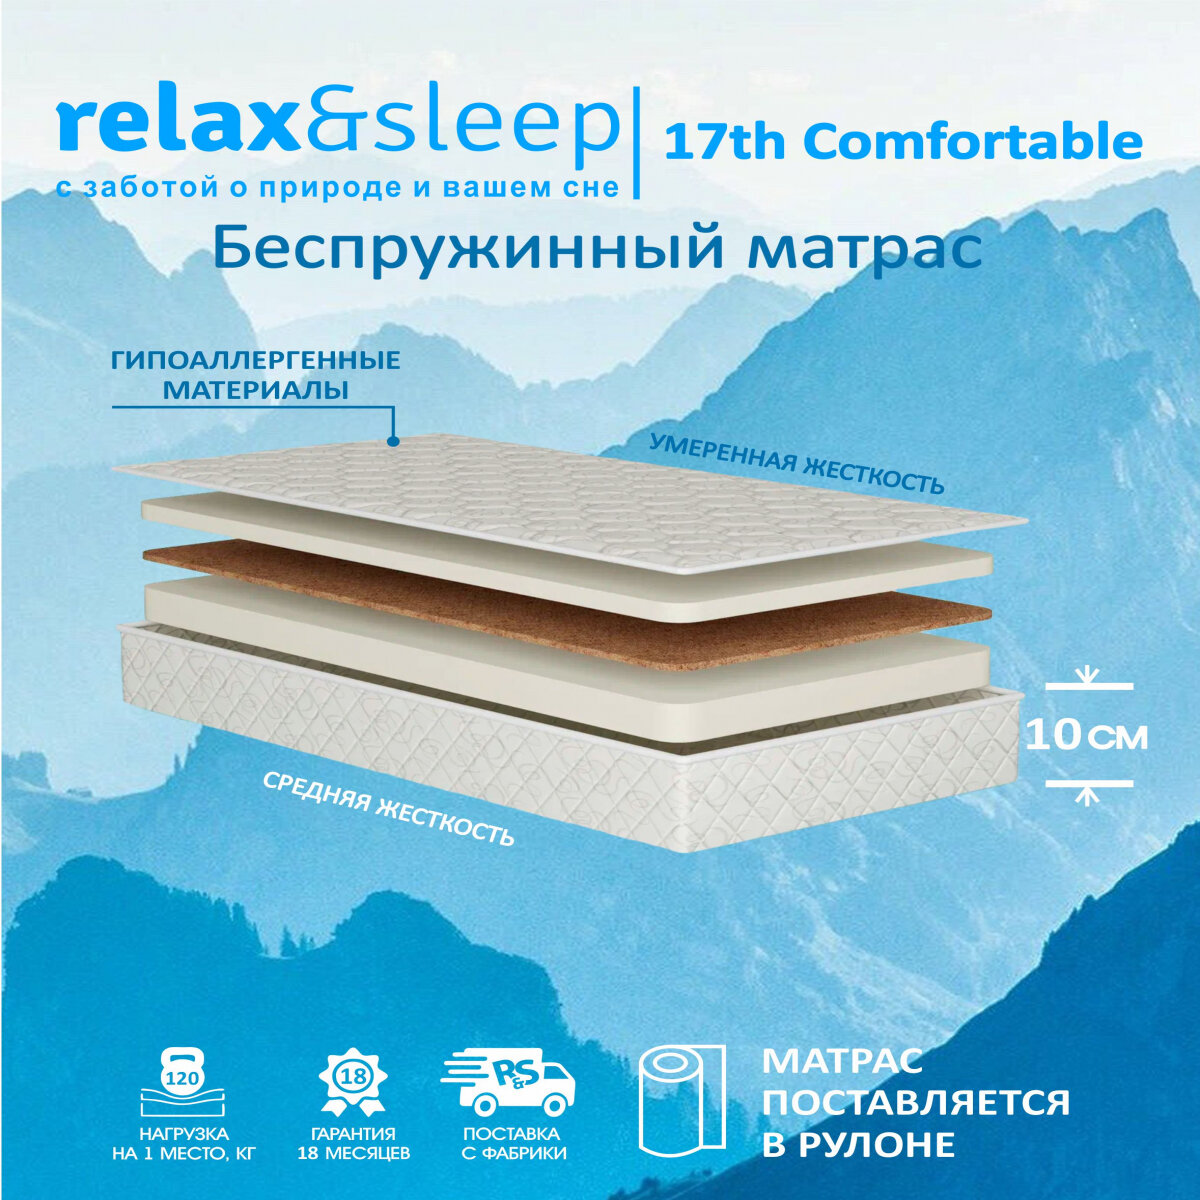 Матрас Relax&Sleep ортопедический беспружинный, топпер 17h Comfortable (75 / 190)